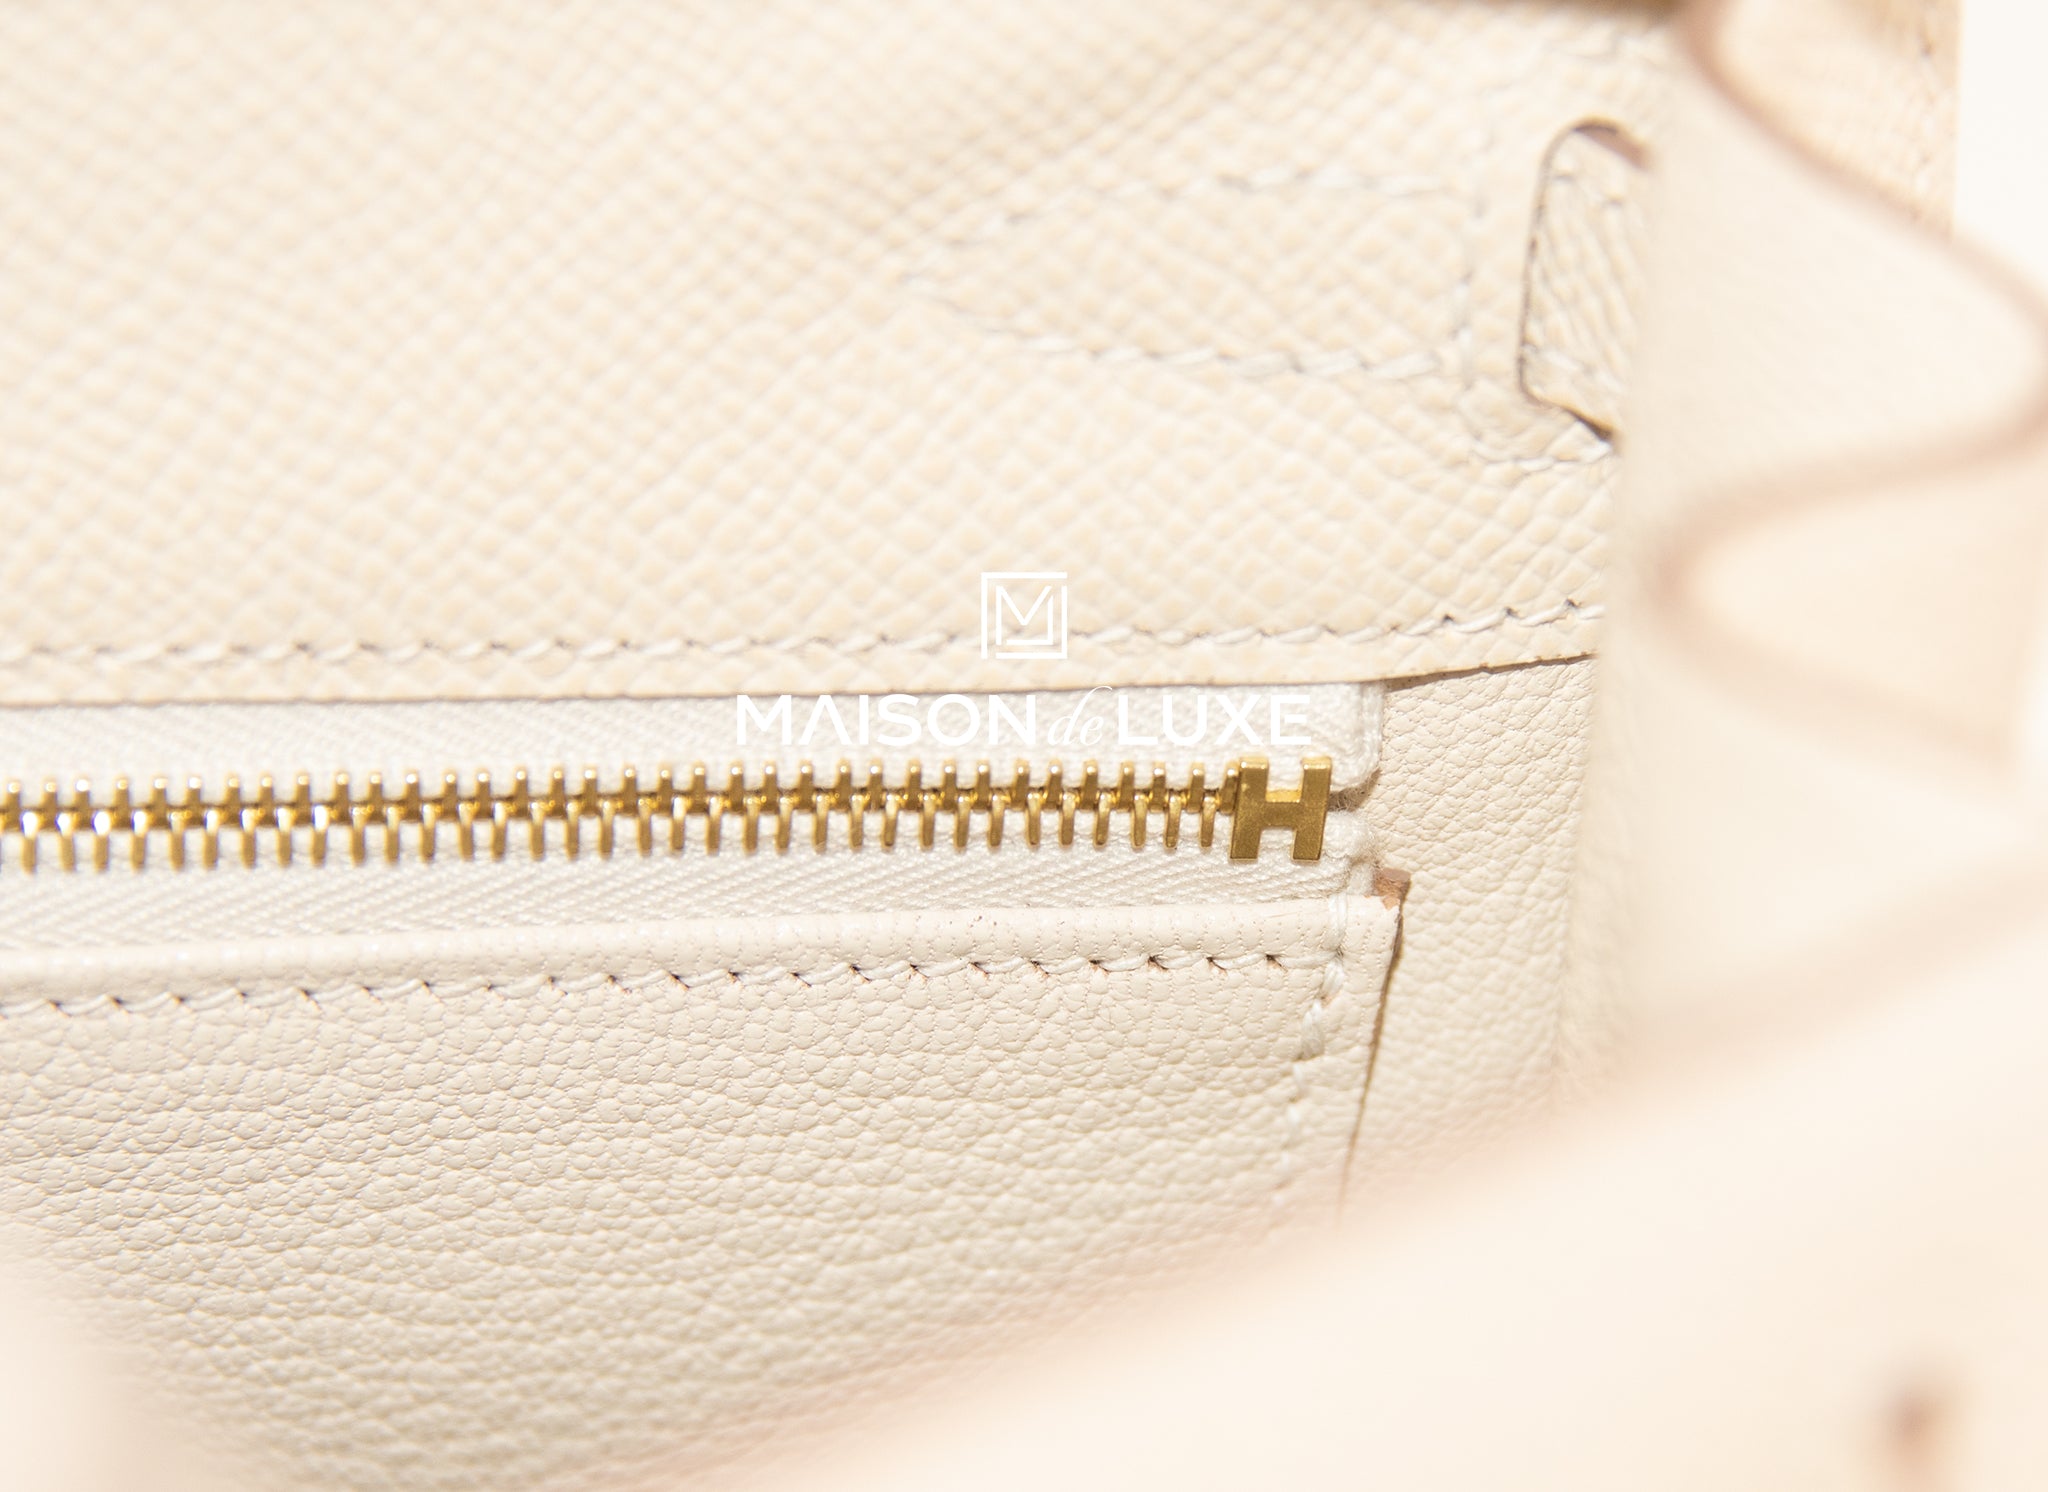 Hermès 25cm Kelly Sellier, Craie Epsom Leather